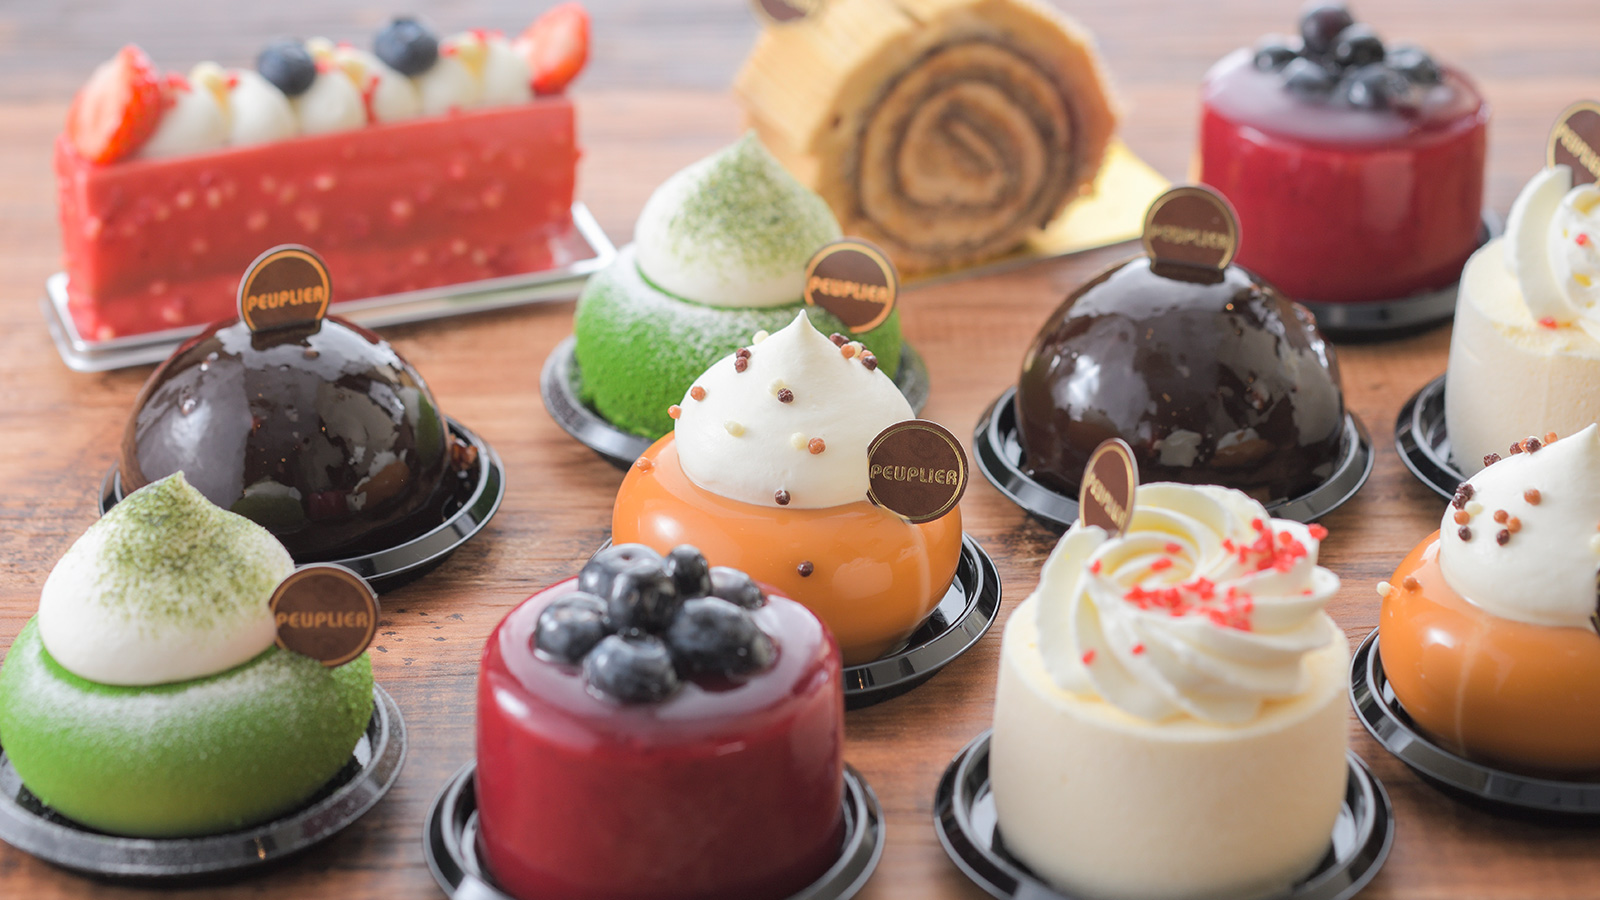 埼玉 豊富なラインナップが魅力的 埼玉一美味しいケーキ屋 ププリエ の魅力をご紹介 Sweetsvillage スイーツビレッジ